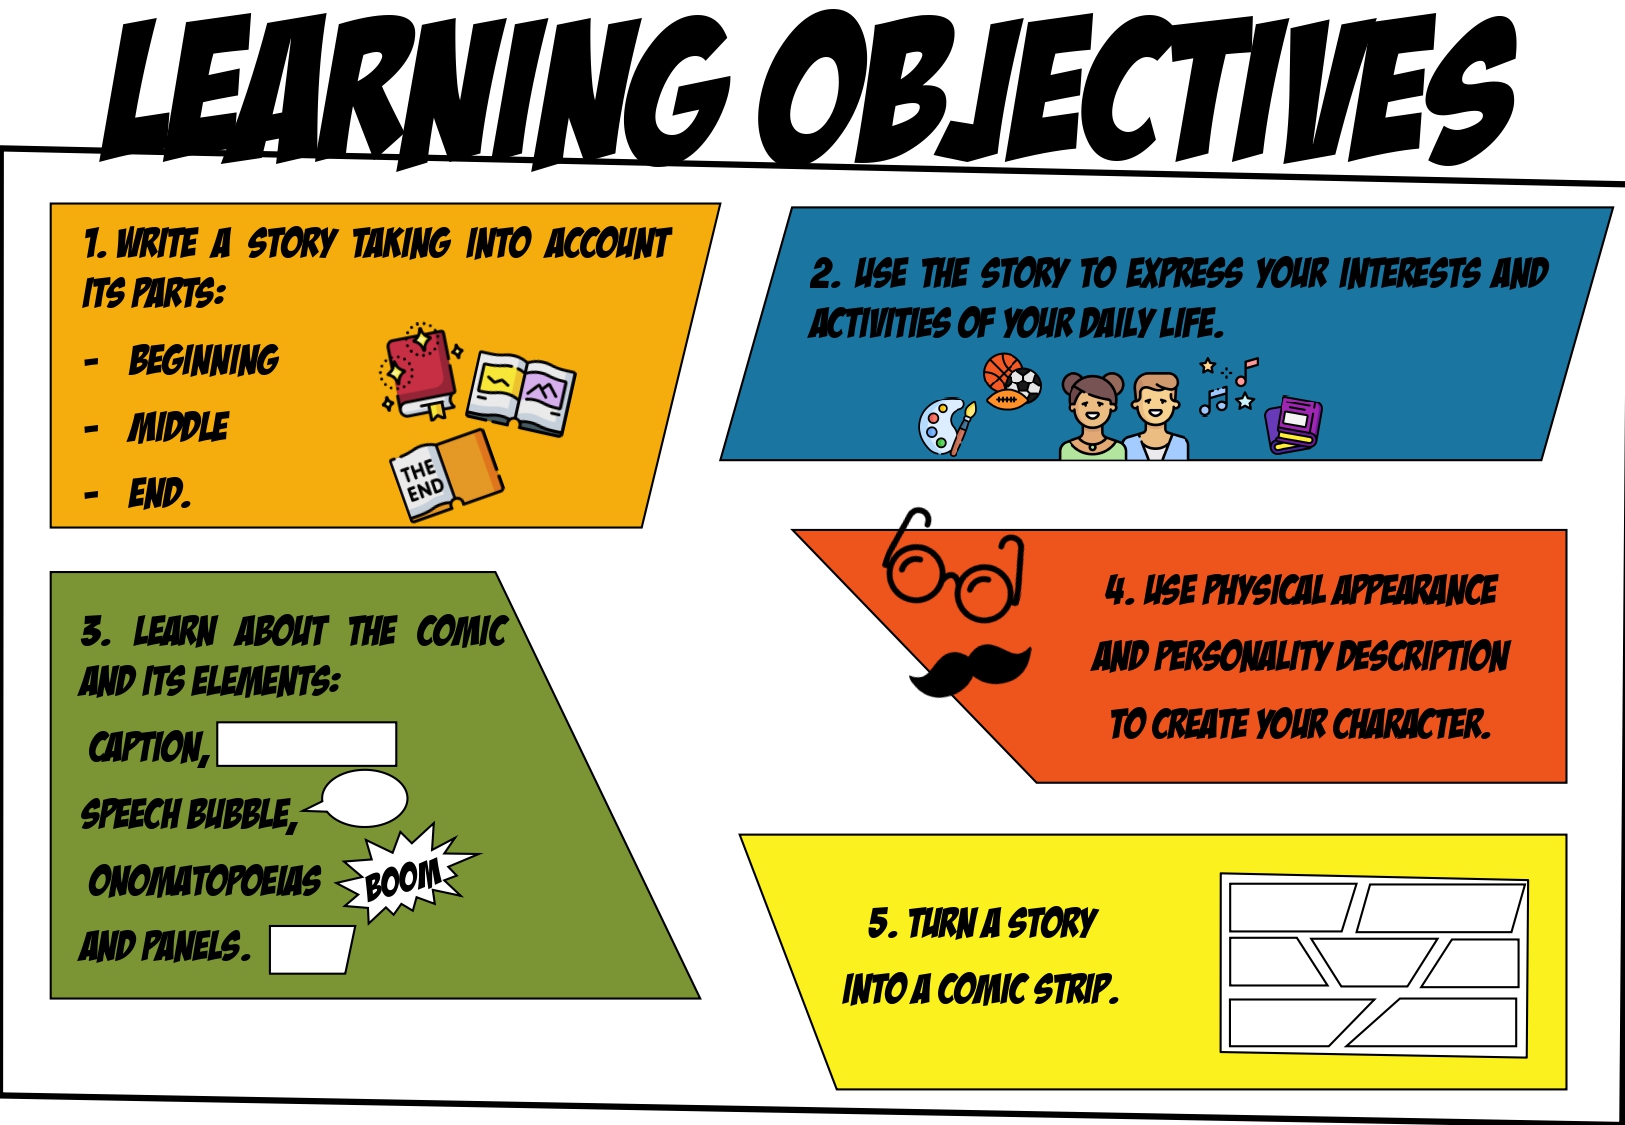 La imagen muestra una infografía de los objetivos de aprendizaje